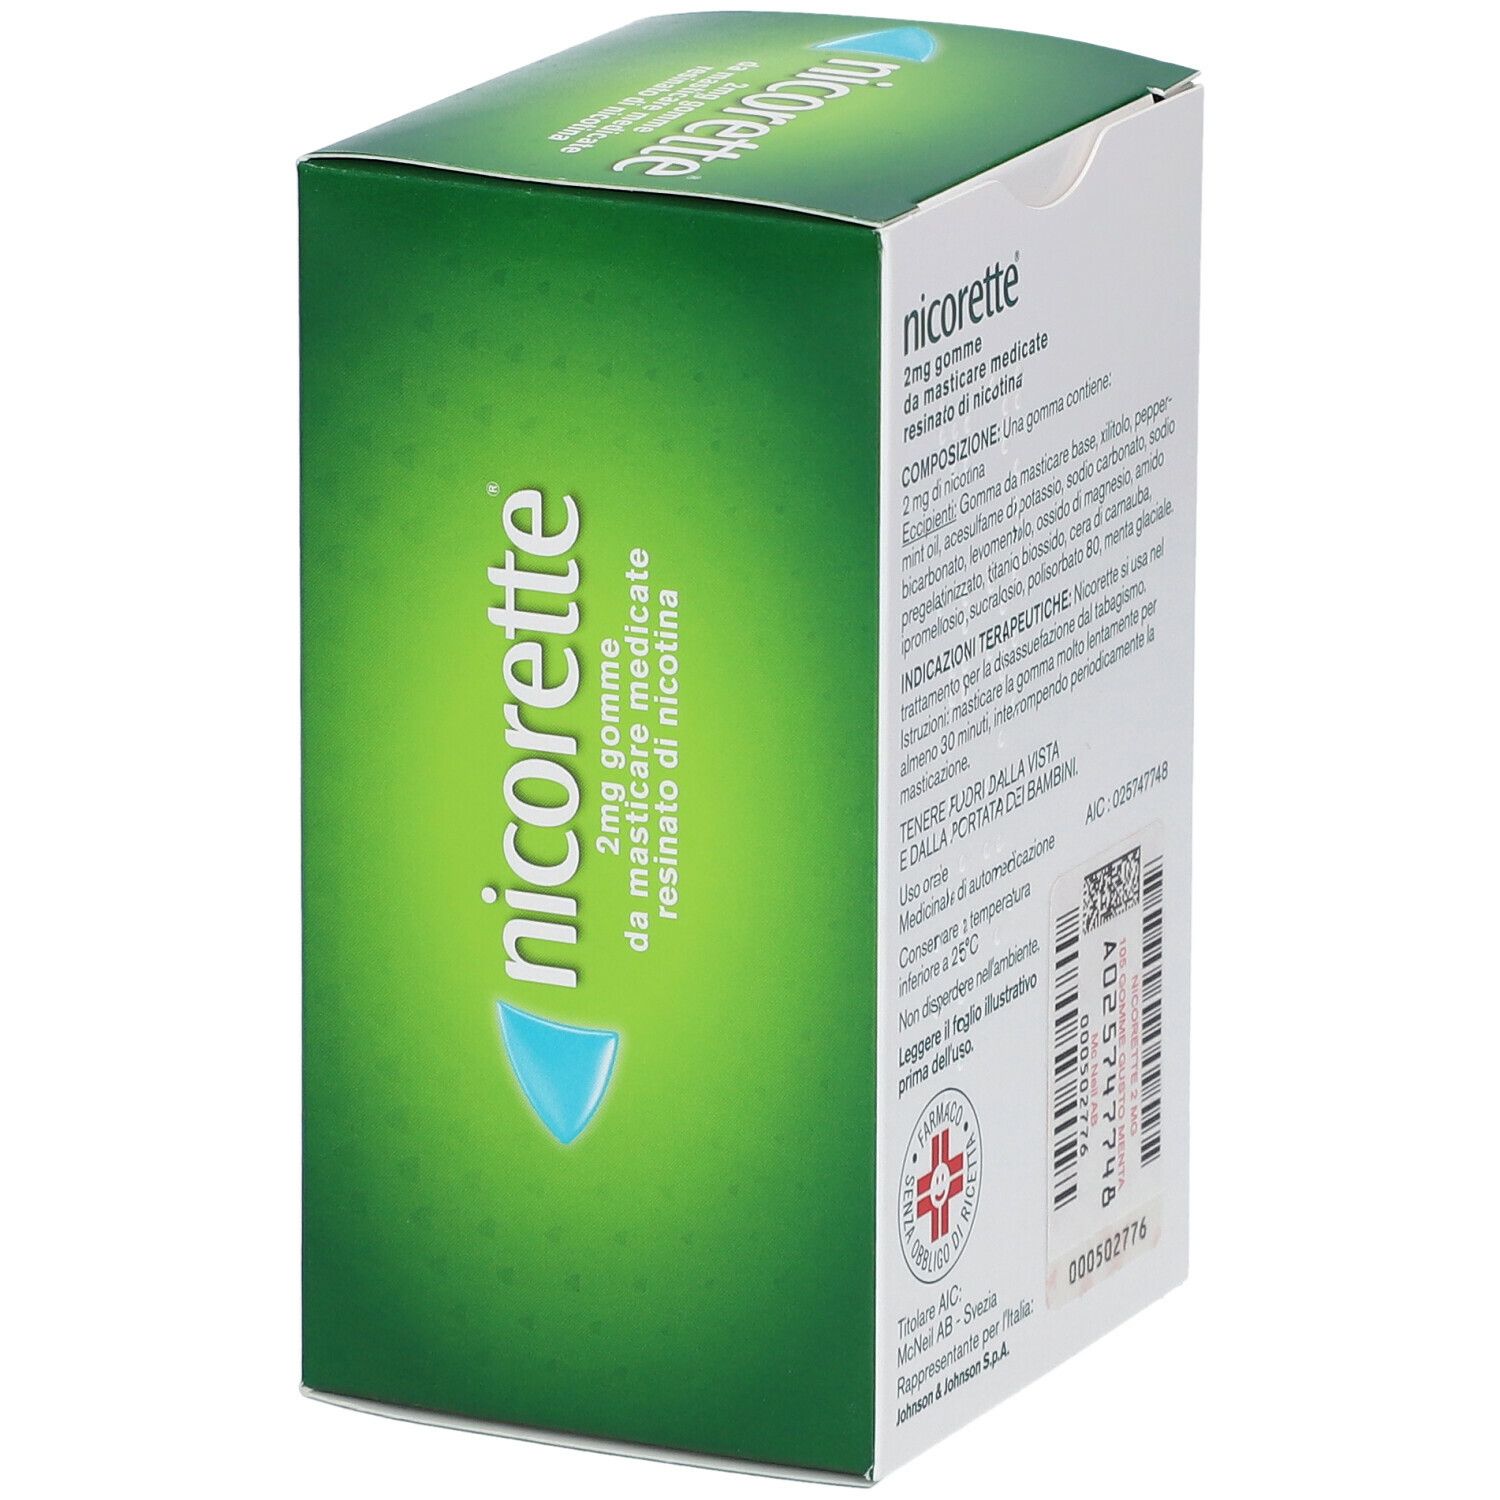 Nicorette® Menta Forte Gomme da masticare 105 pz 2 mg